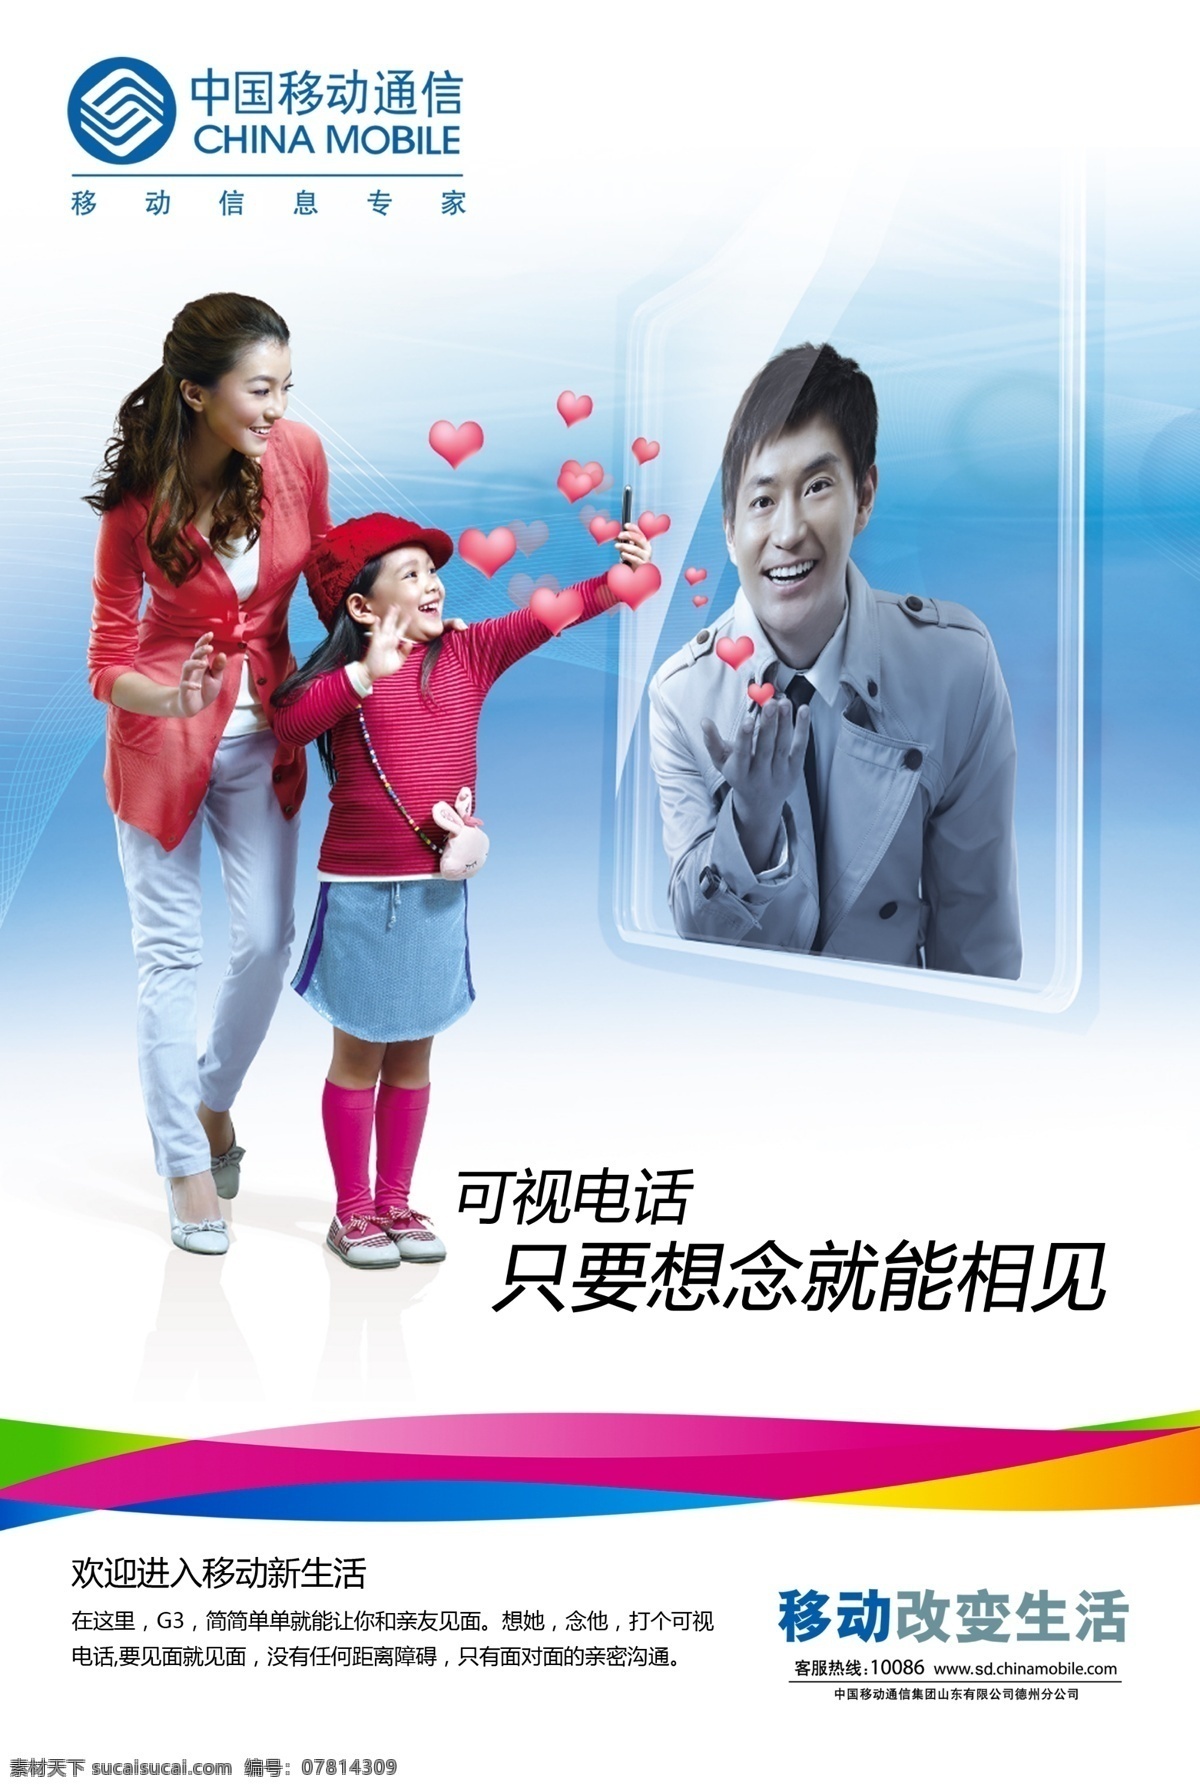 中国移动海报 海报 中国移动 一家三口 人物 爱心 可视电话 广告设计模板 源文件